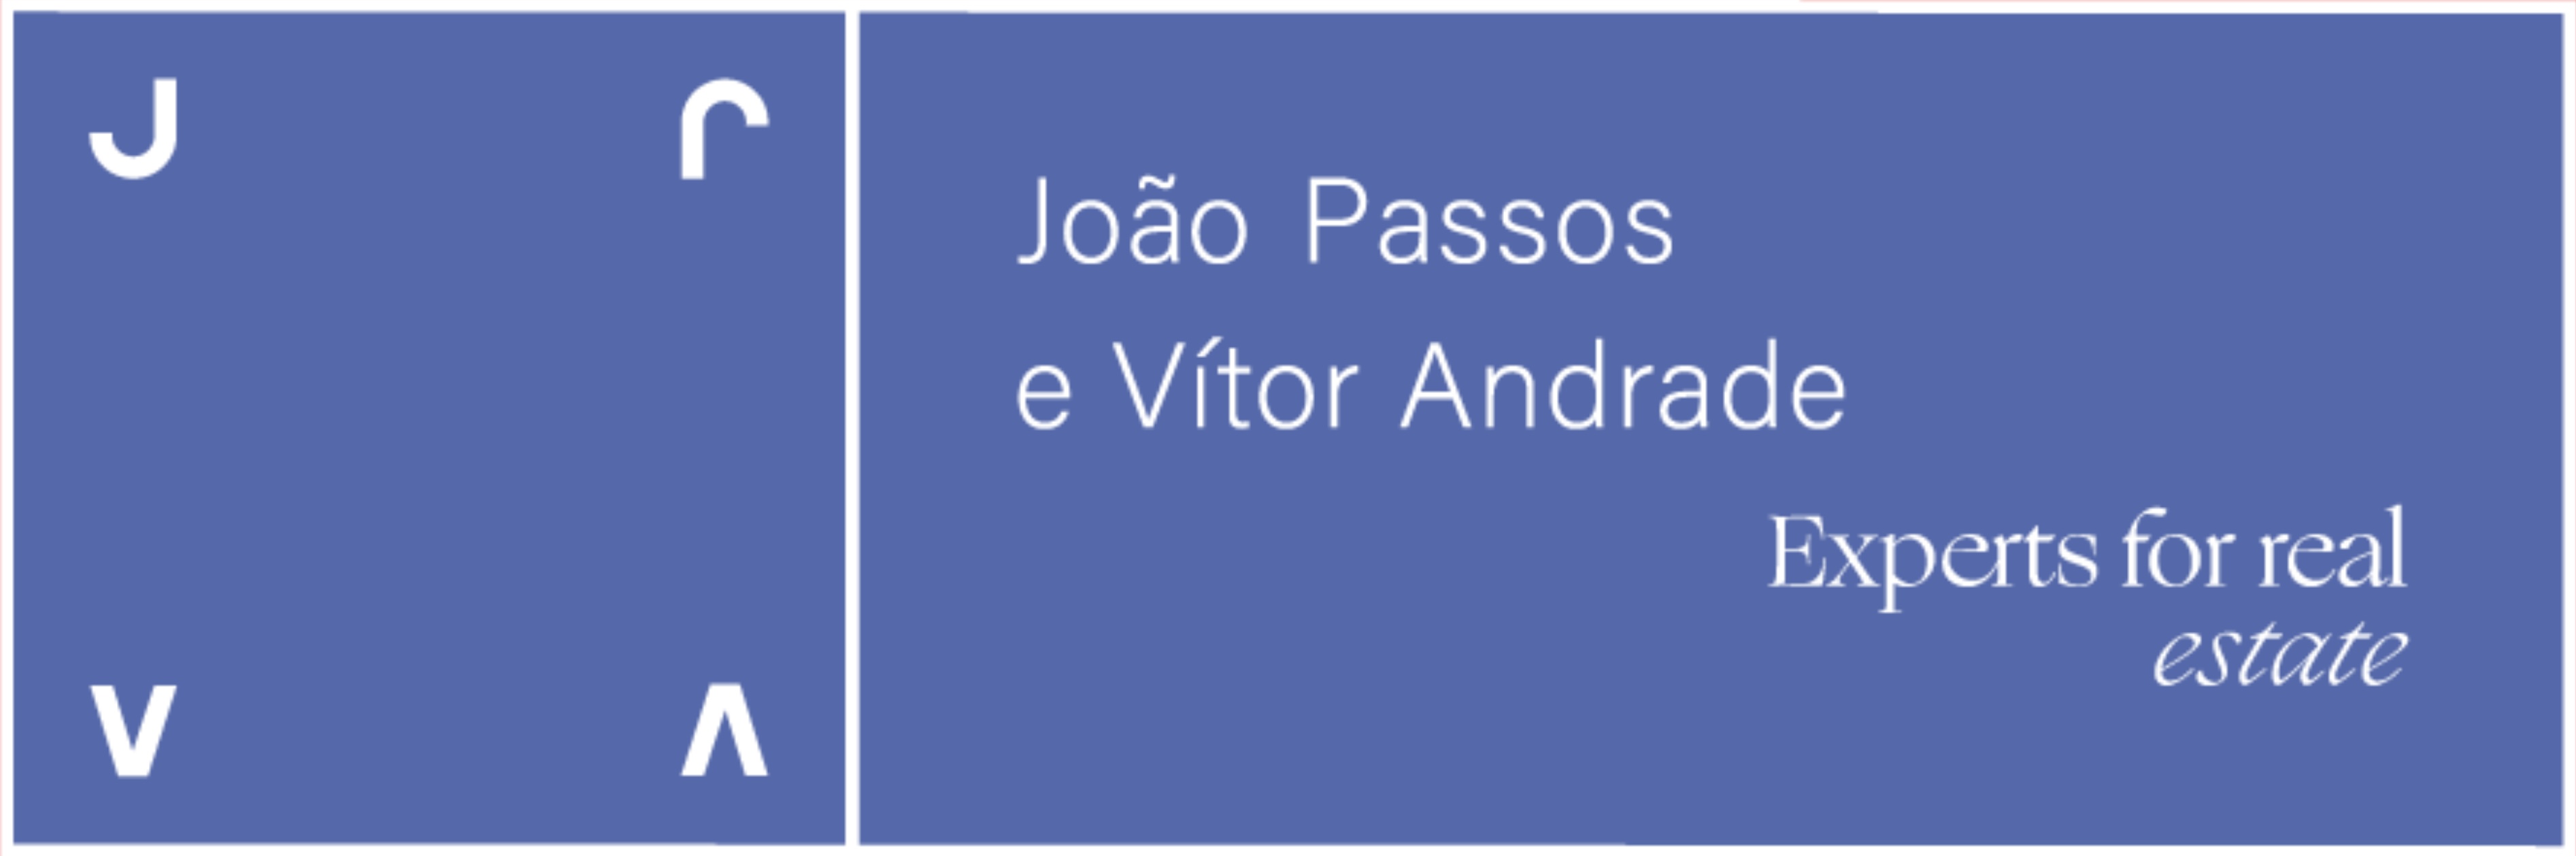 João Passos e Vítor Andrade